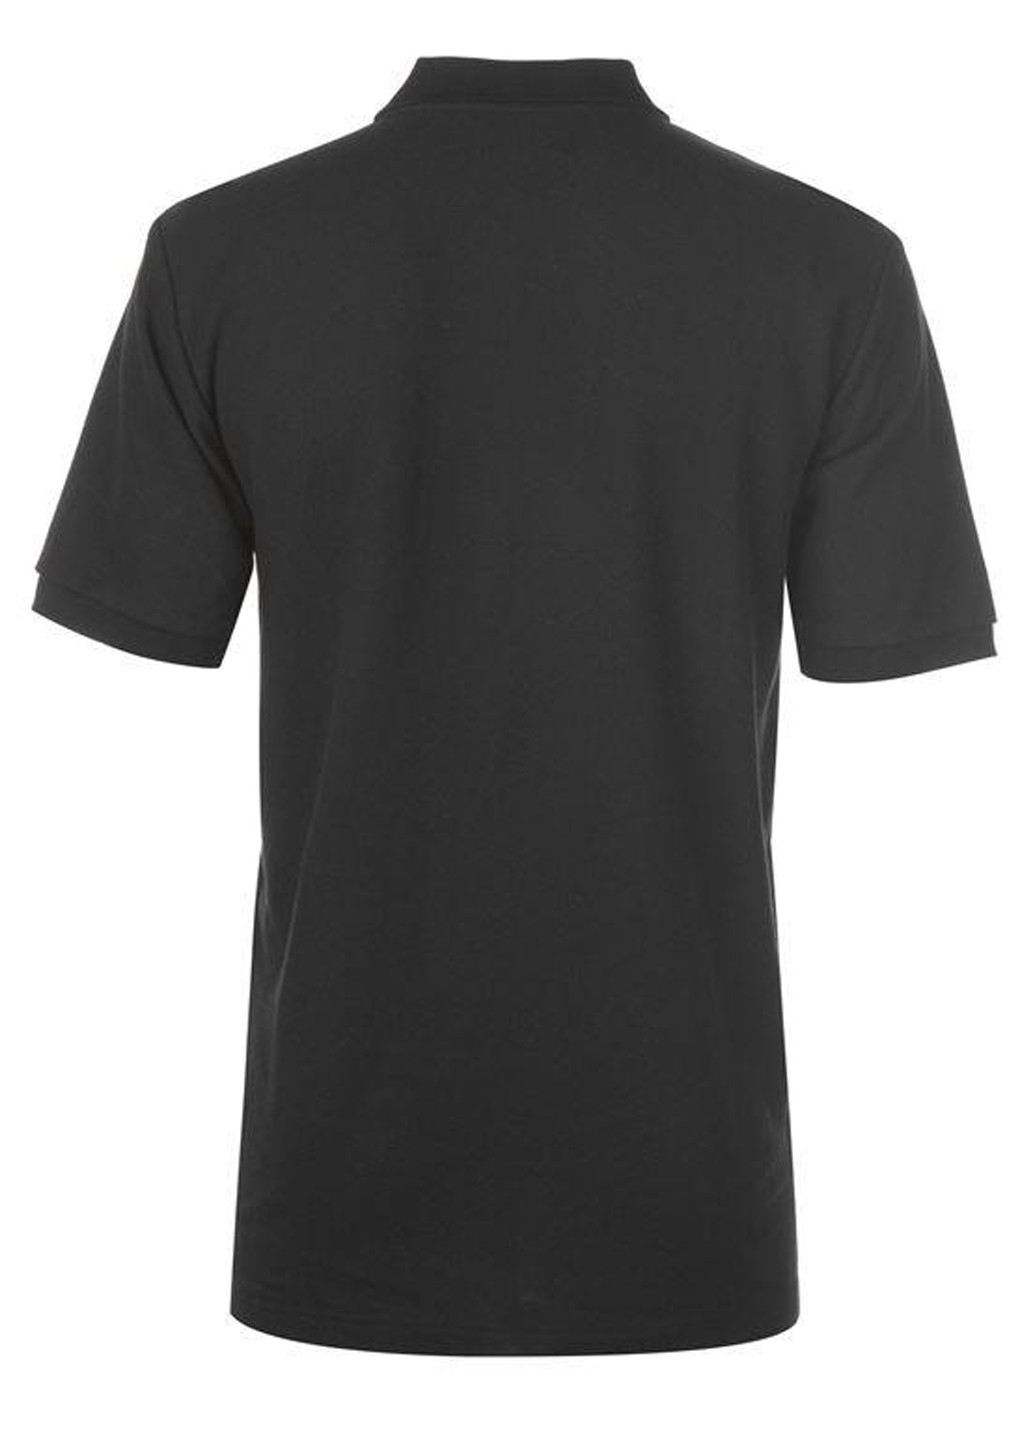 Черная футболка-поло для мужчин Slazenger с логотипом